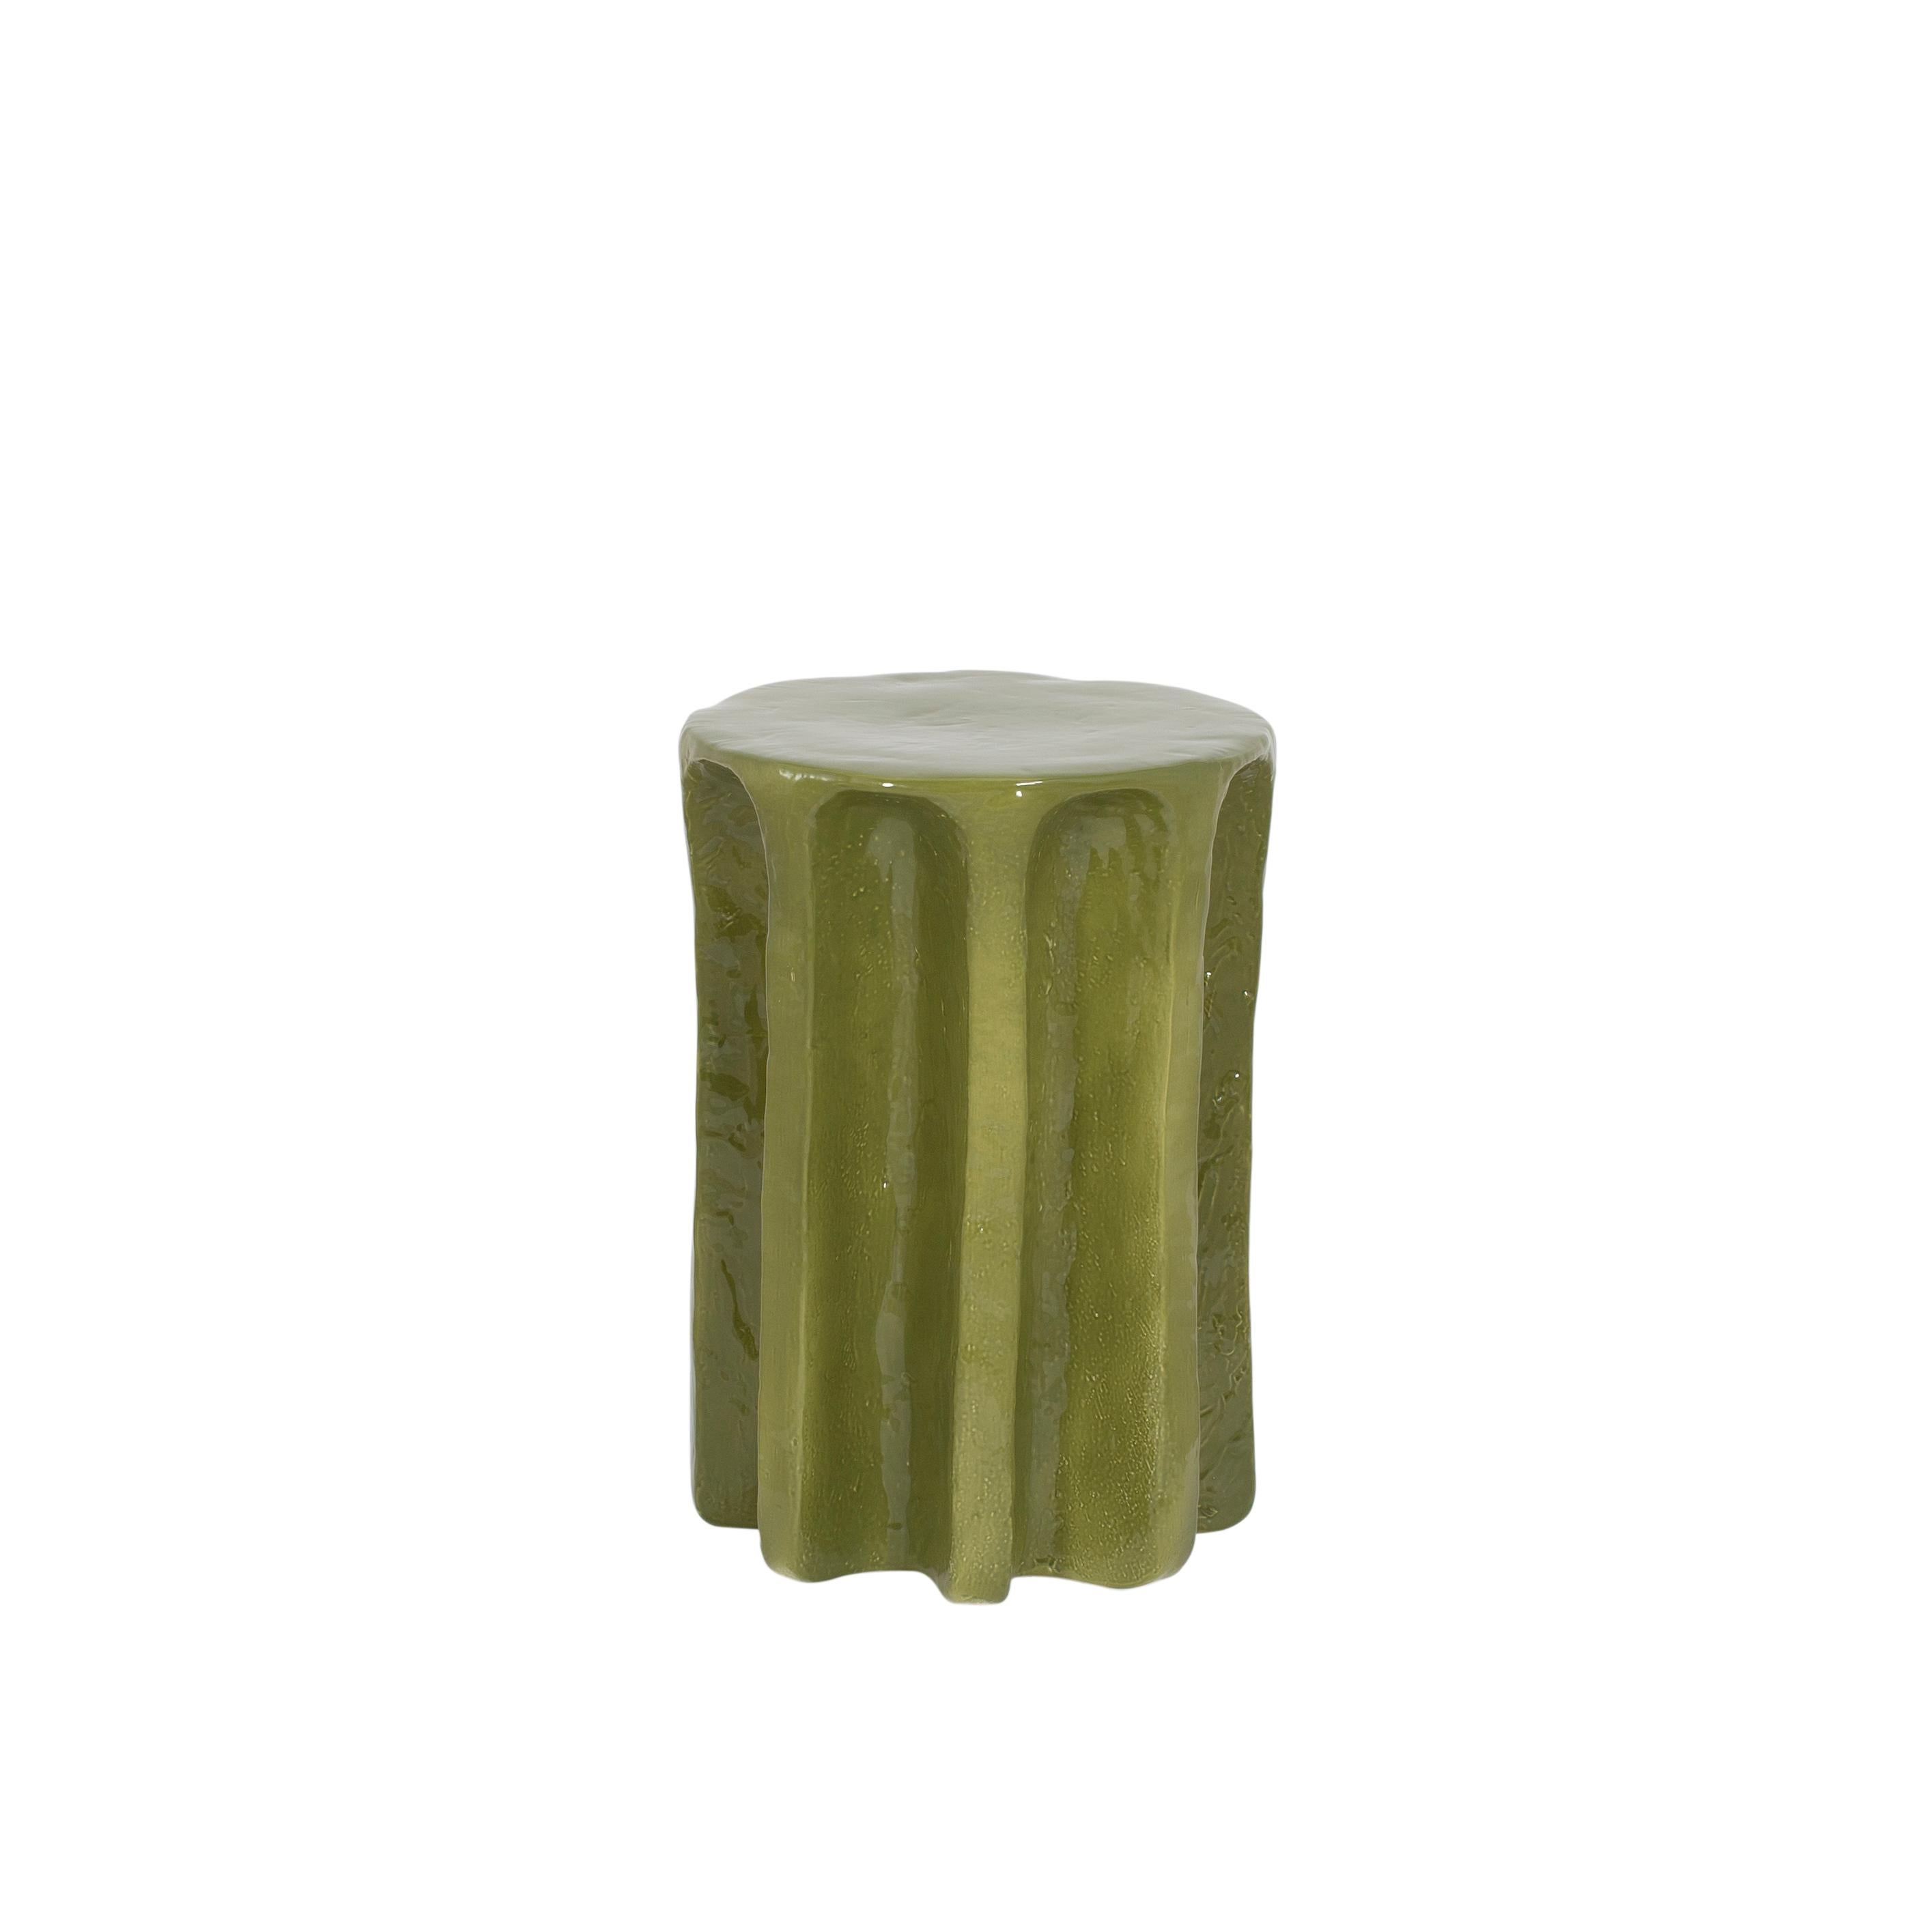 Table d'appoint haute verte Chouchou par Pulpo
Dimensions : D39 x H57 cm
Matériaux : céramique

Également disponible en différentes couleurs. 

Chouchou porte les contours d'une colonne antique - ce qui, connaissant le designer Lorenzo Zanovello,